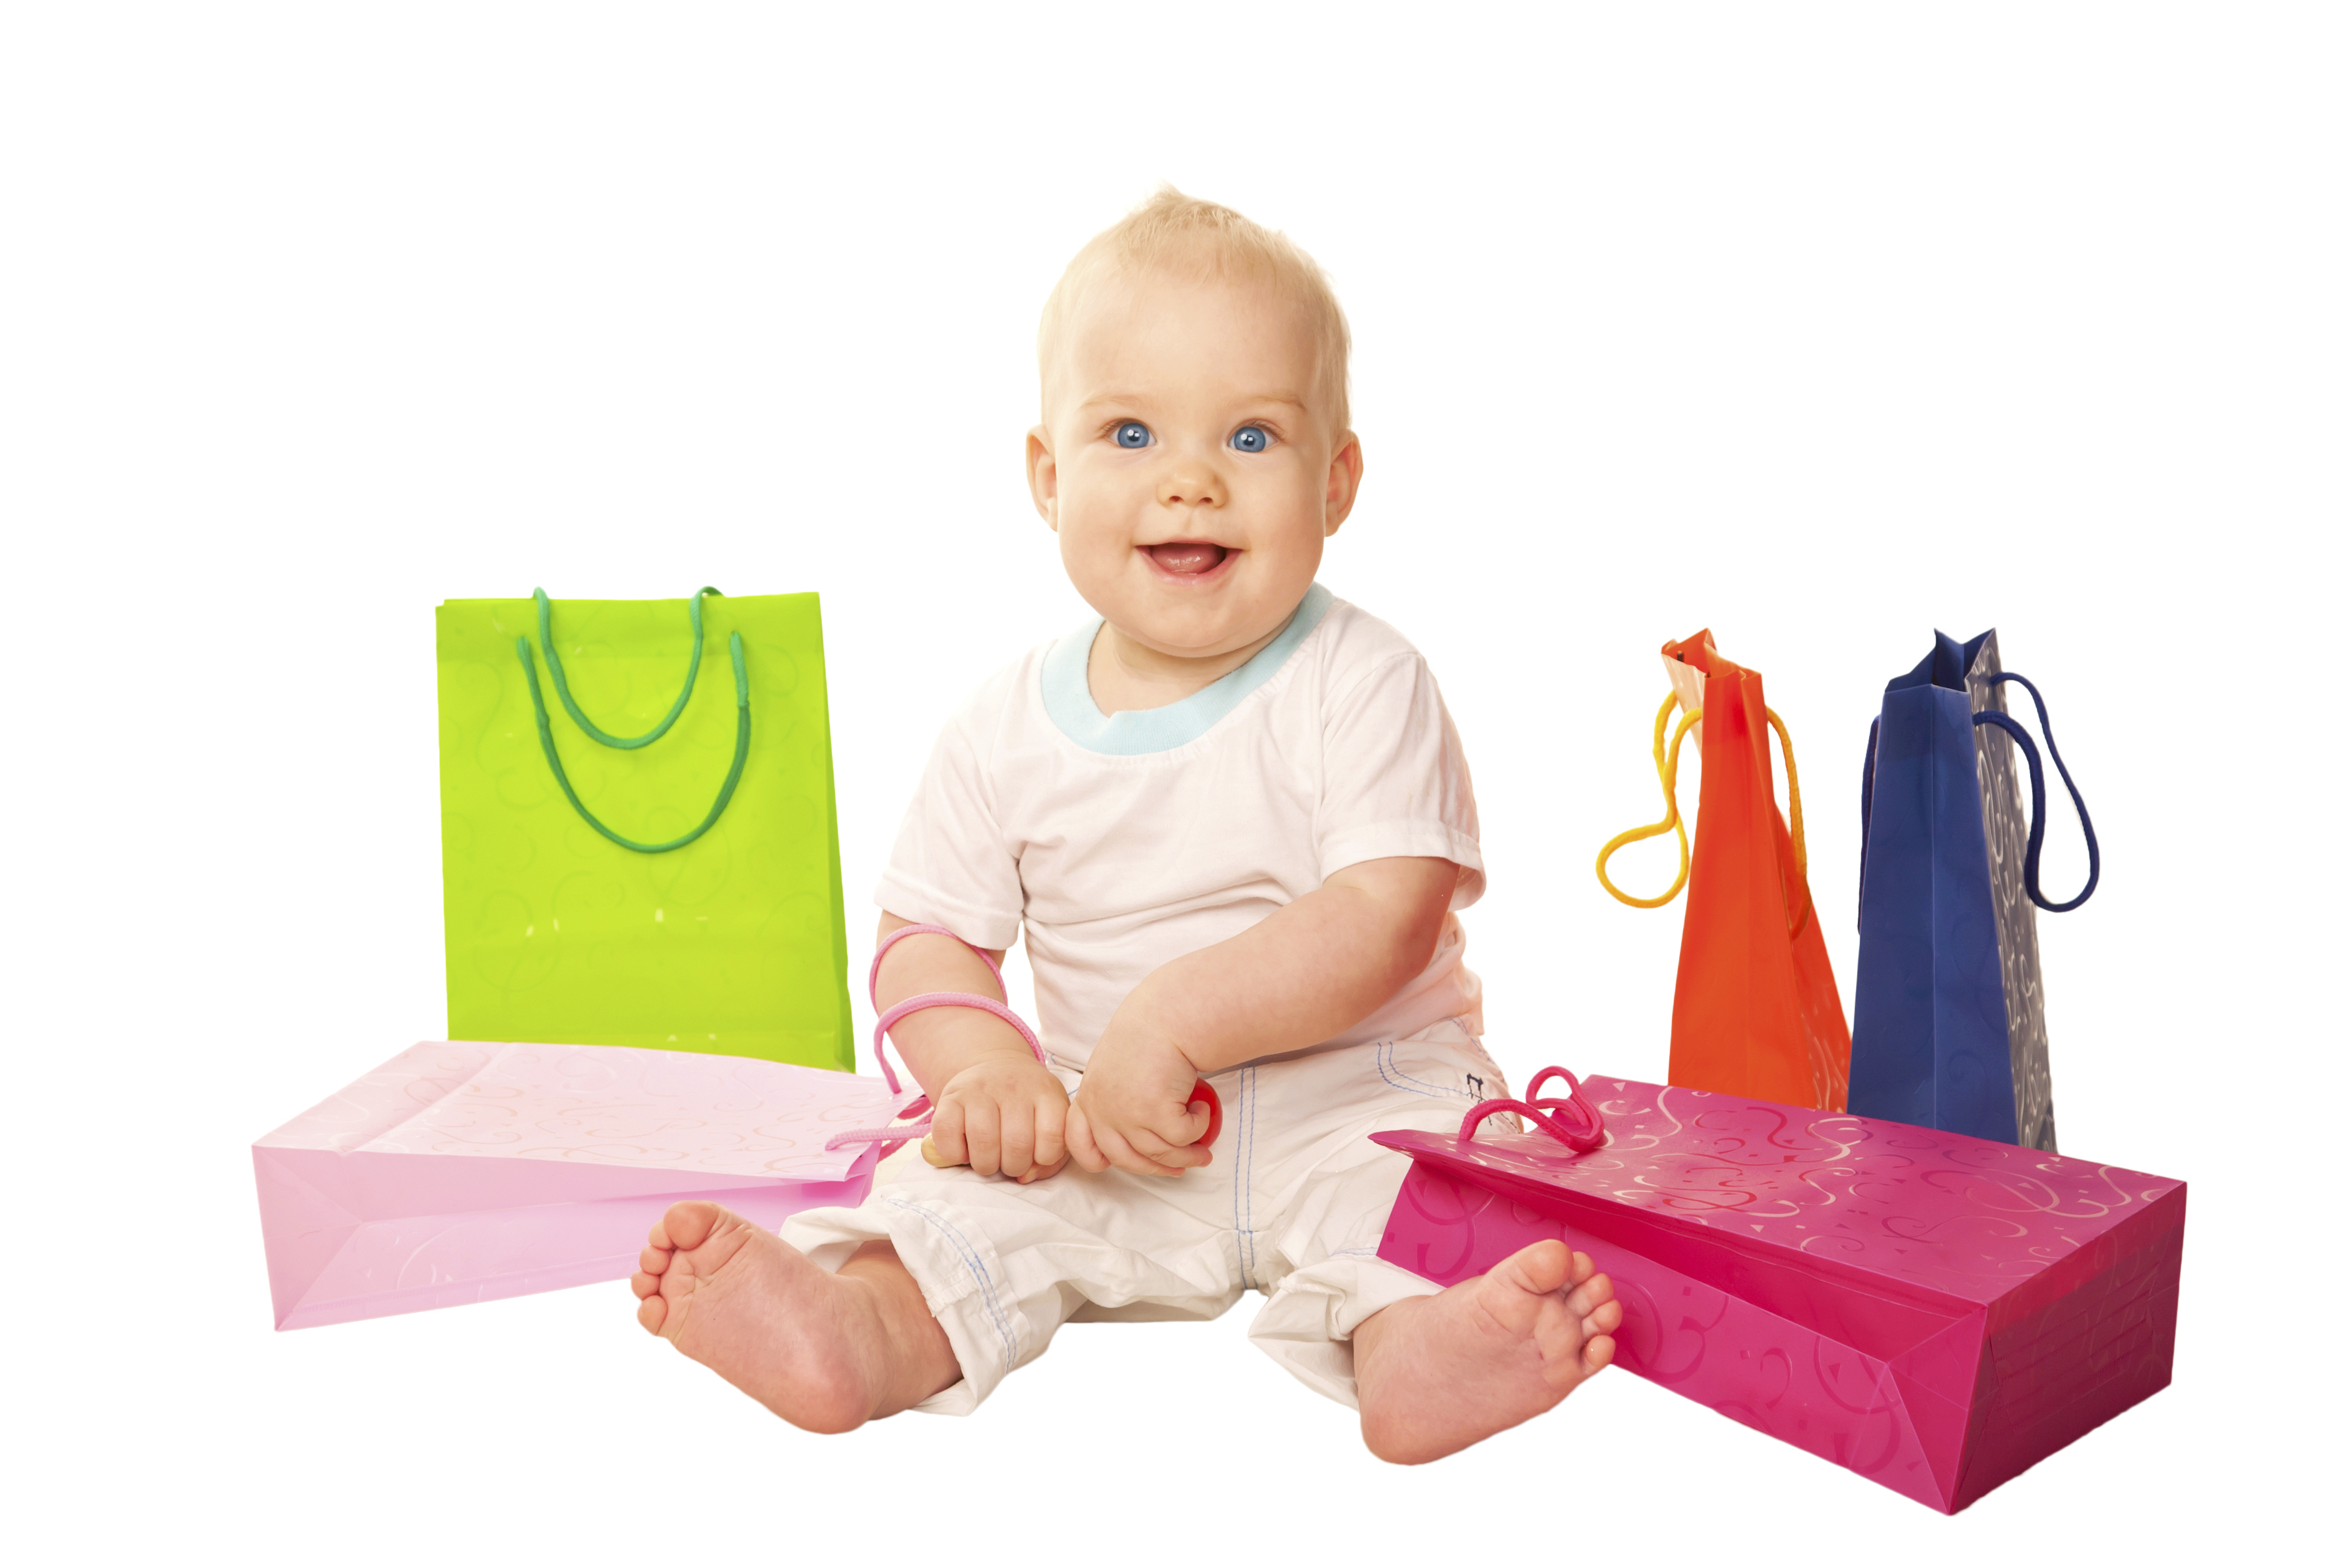 Cadouri pentru bebeluși - sugestie cărucioare copii